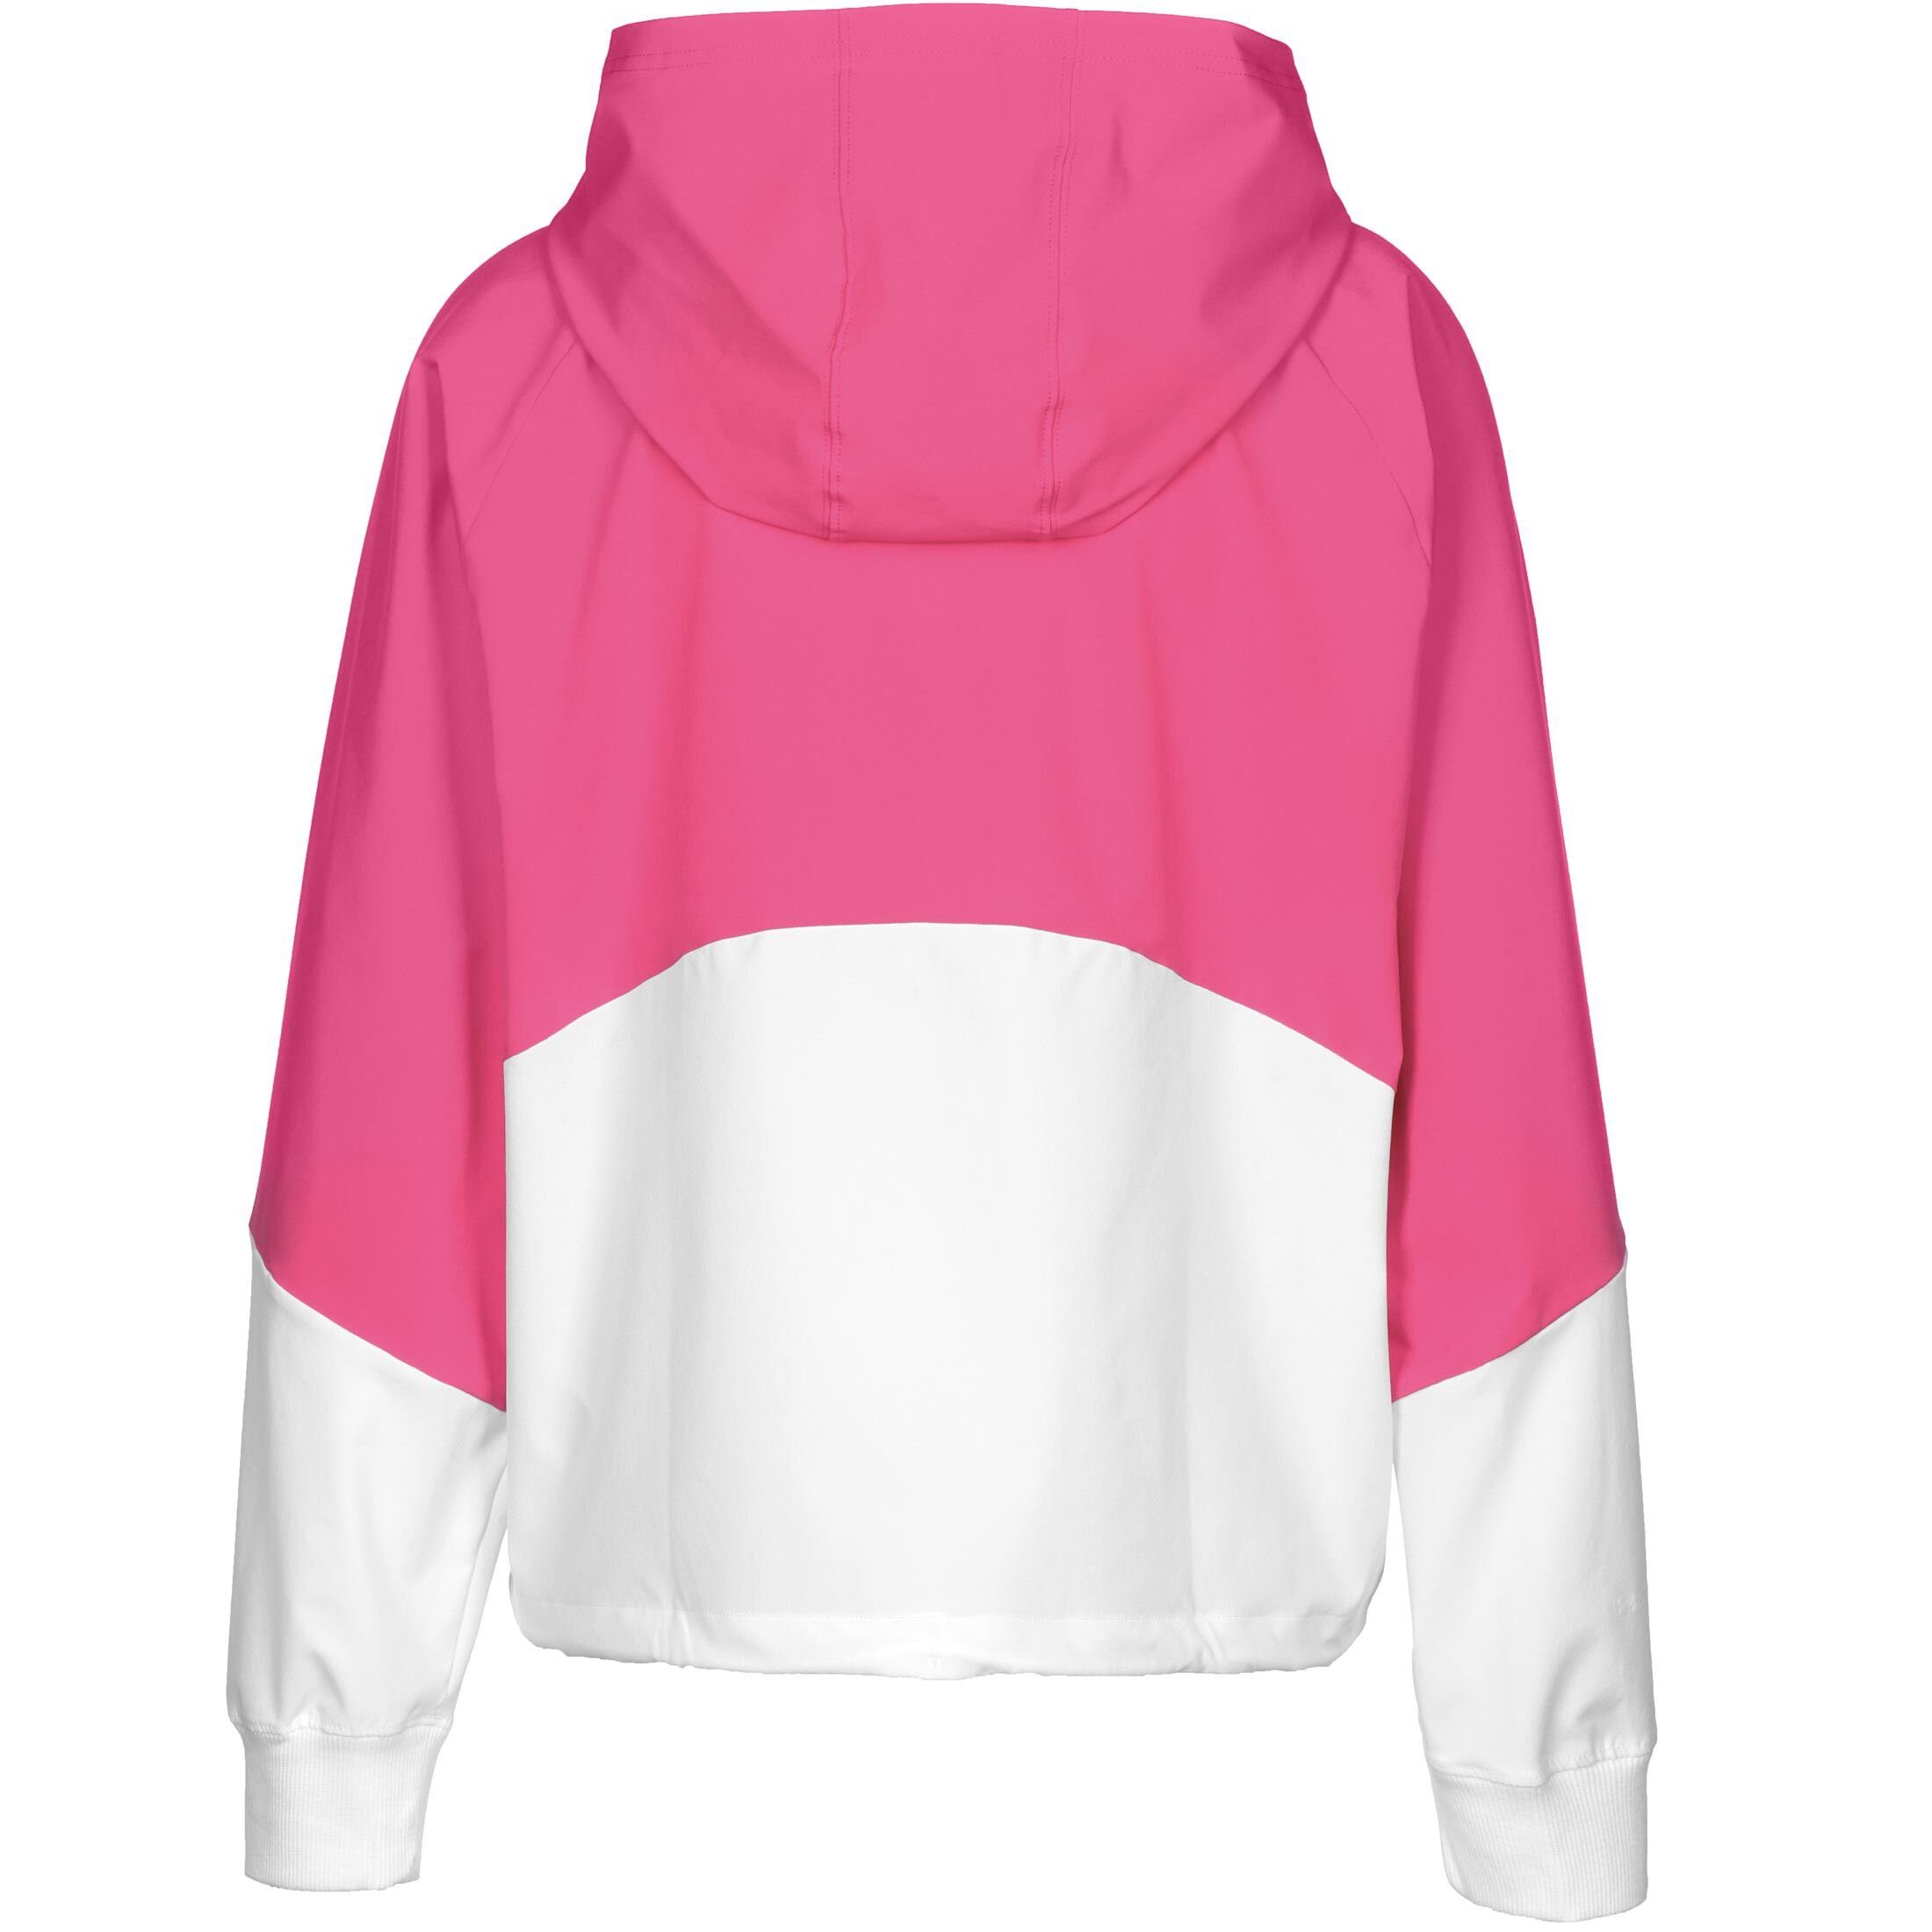 Under Armour® weiß Trainingsjacke / Jacke pink Woven Damen